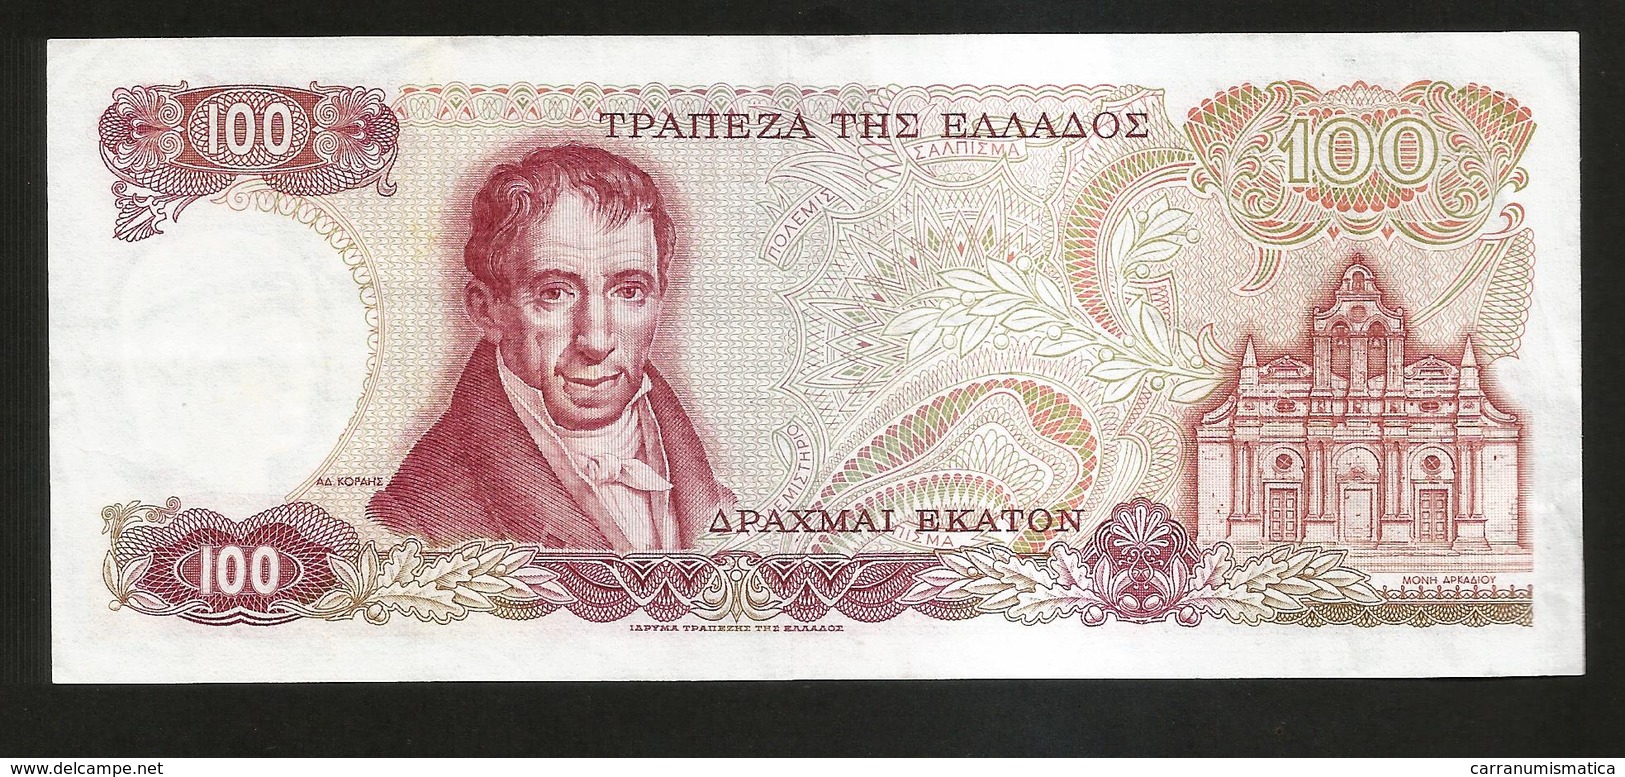 GREECE - NATIONAL BANK - 100 DRACHMAI (1978) - Athena - Grecia